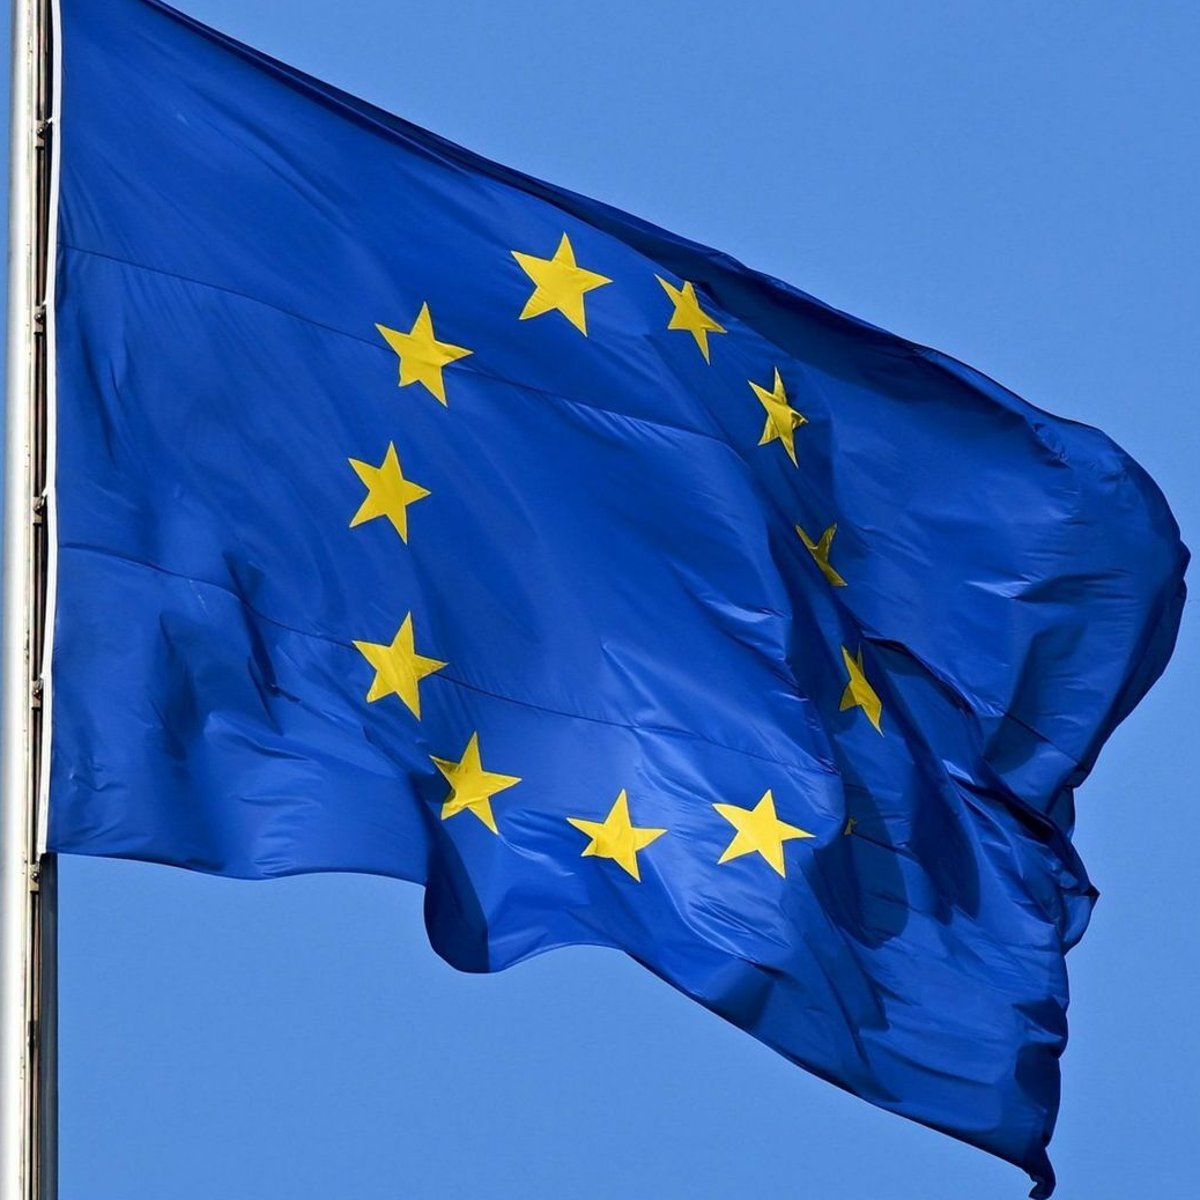 Umfrage zur Europawahl: Union auf EU-Ebene vorn, AfD bei 22 Prozent